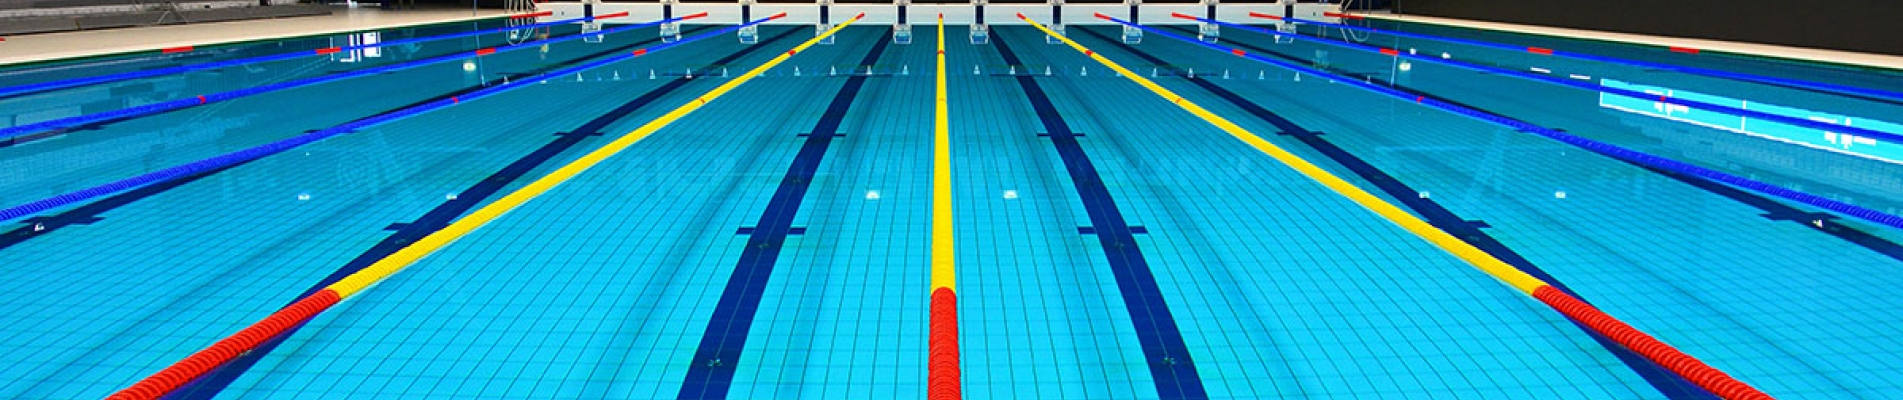 Olimpik Yüzme Havuzu Kurulumu Nasıl Yapılır?